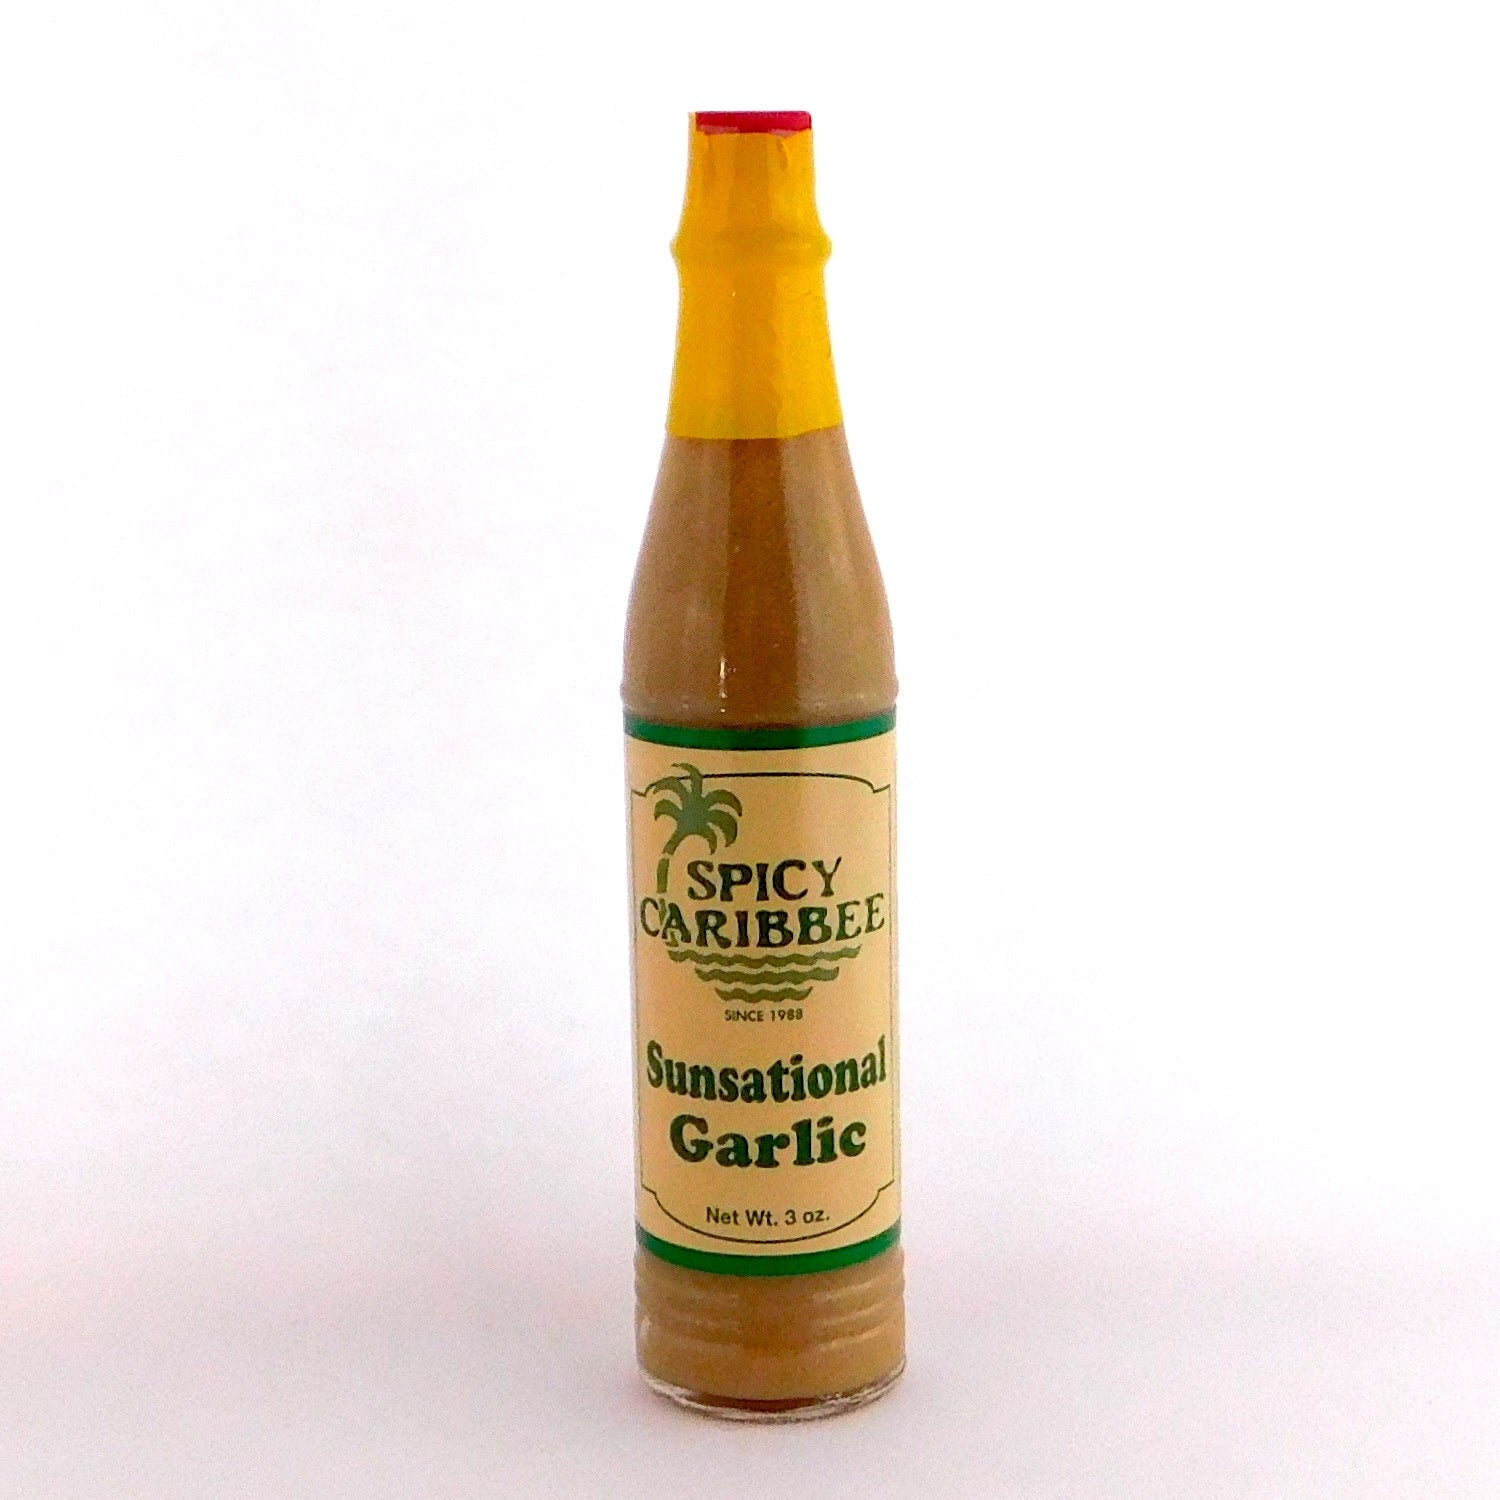 Sunsational Garlic